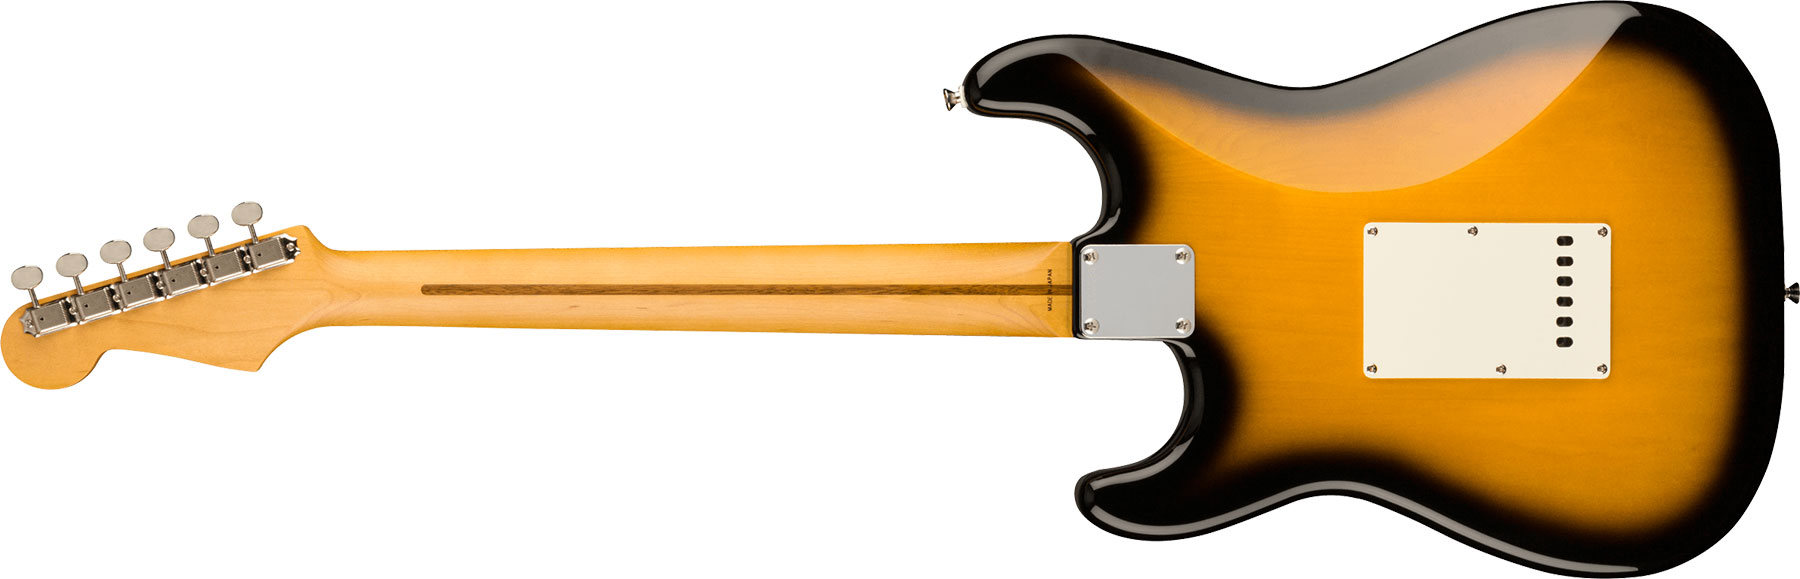 Fender Strat Jv Modified '50s Jap Hss Trem Mn - 2-color Sunburst - E-Gitarre in Str-Form - Variation 1